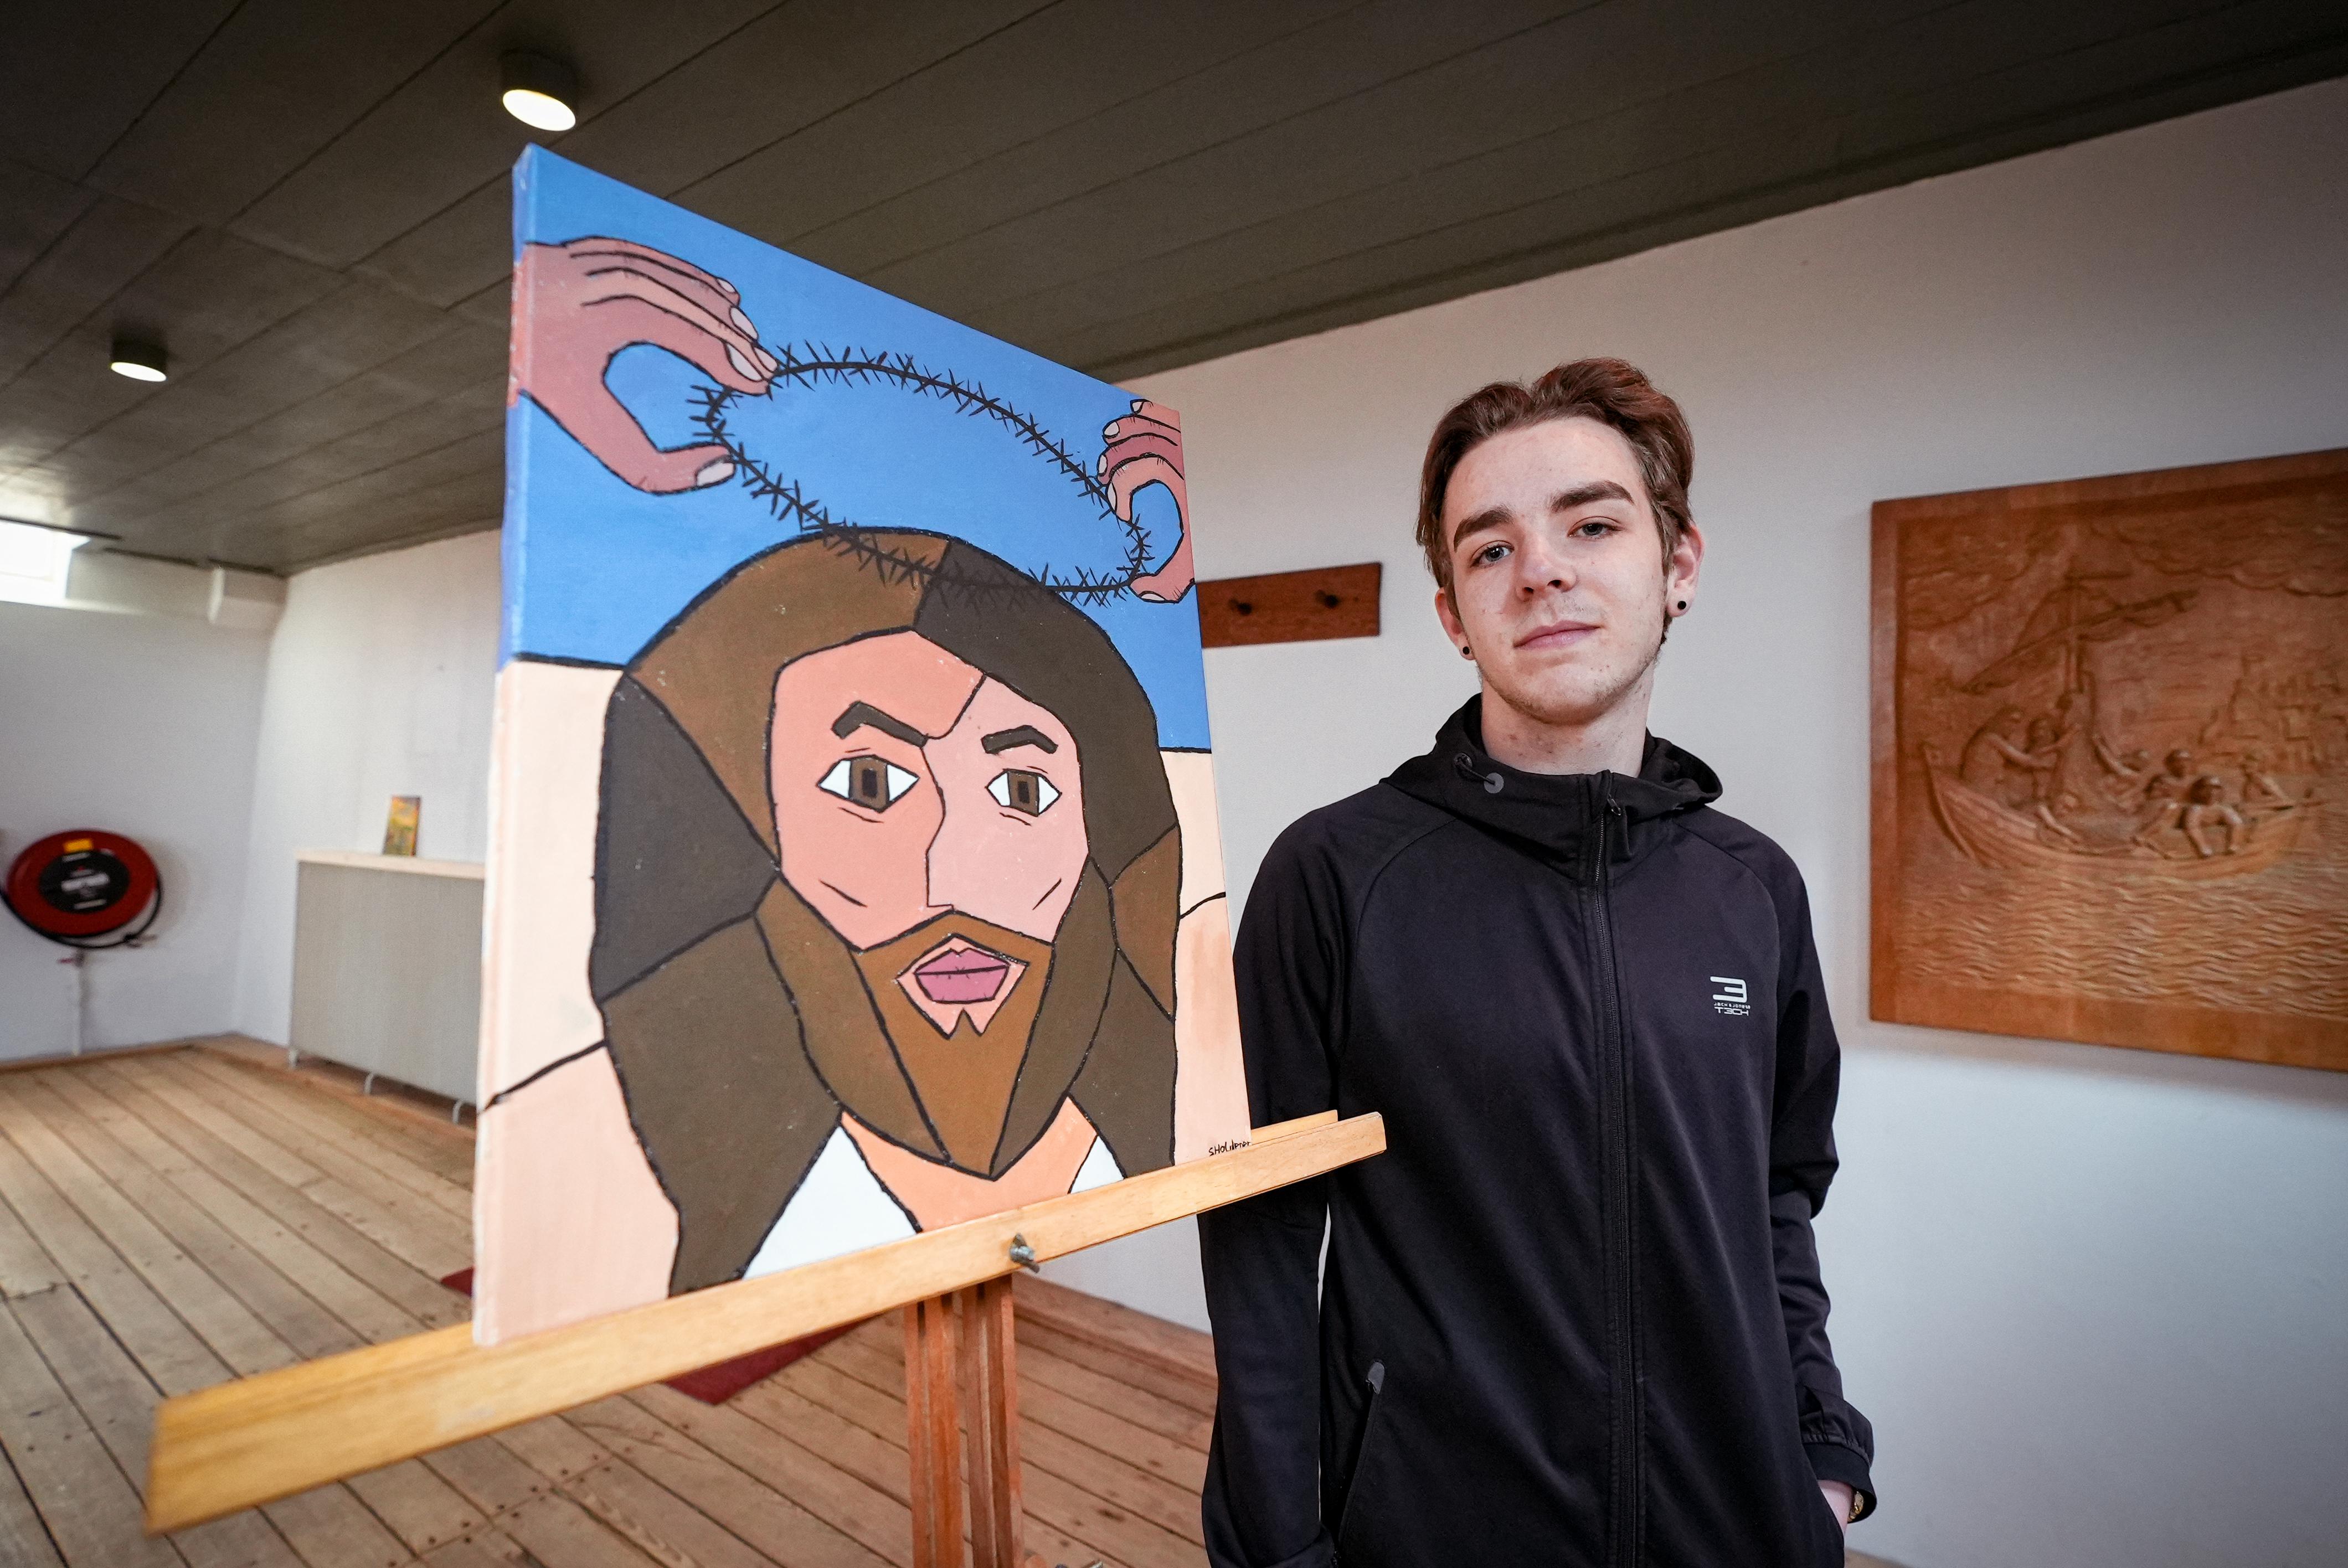 Jonge kerkgangers maken kunstwerken rond het Paasverhaal Niemand weet hoe Jezus er heeft uitgezien Noordhollandsdagblad